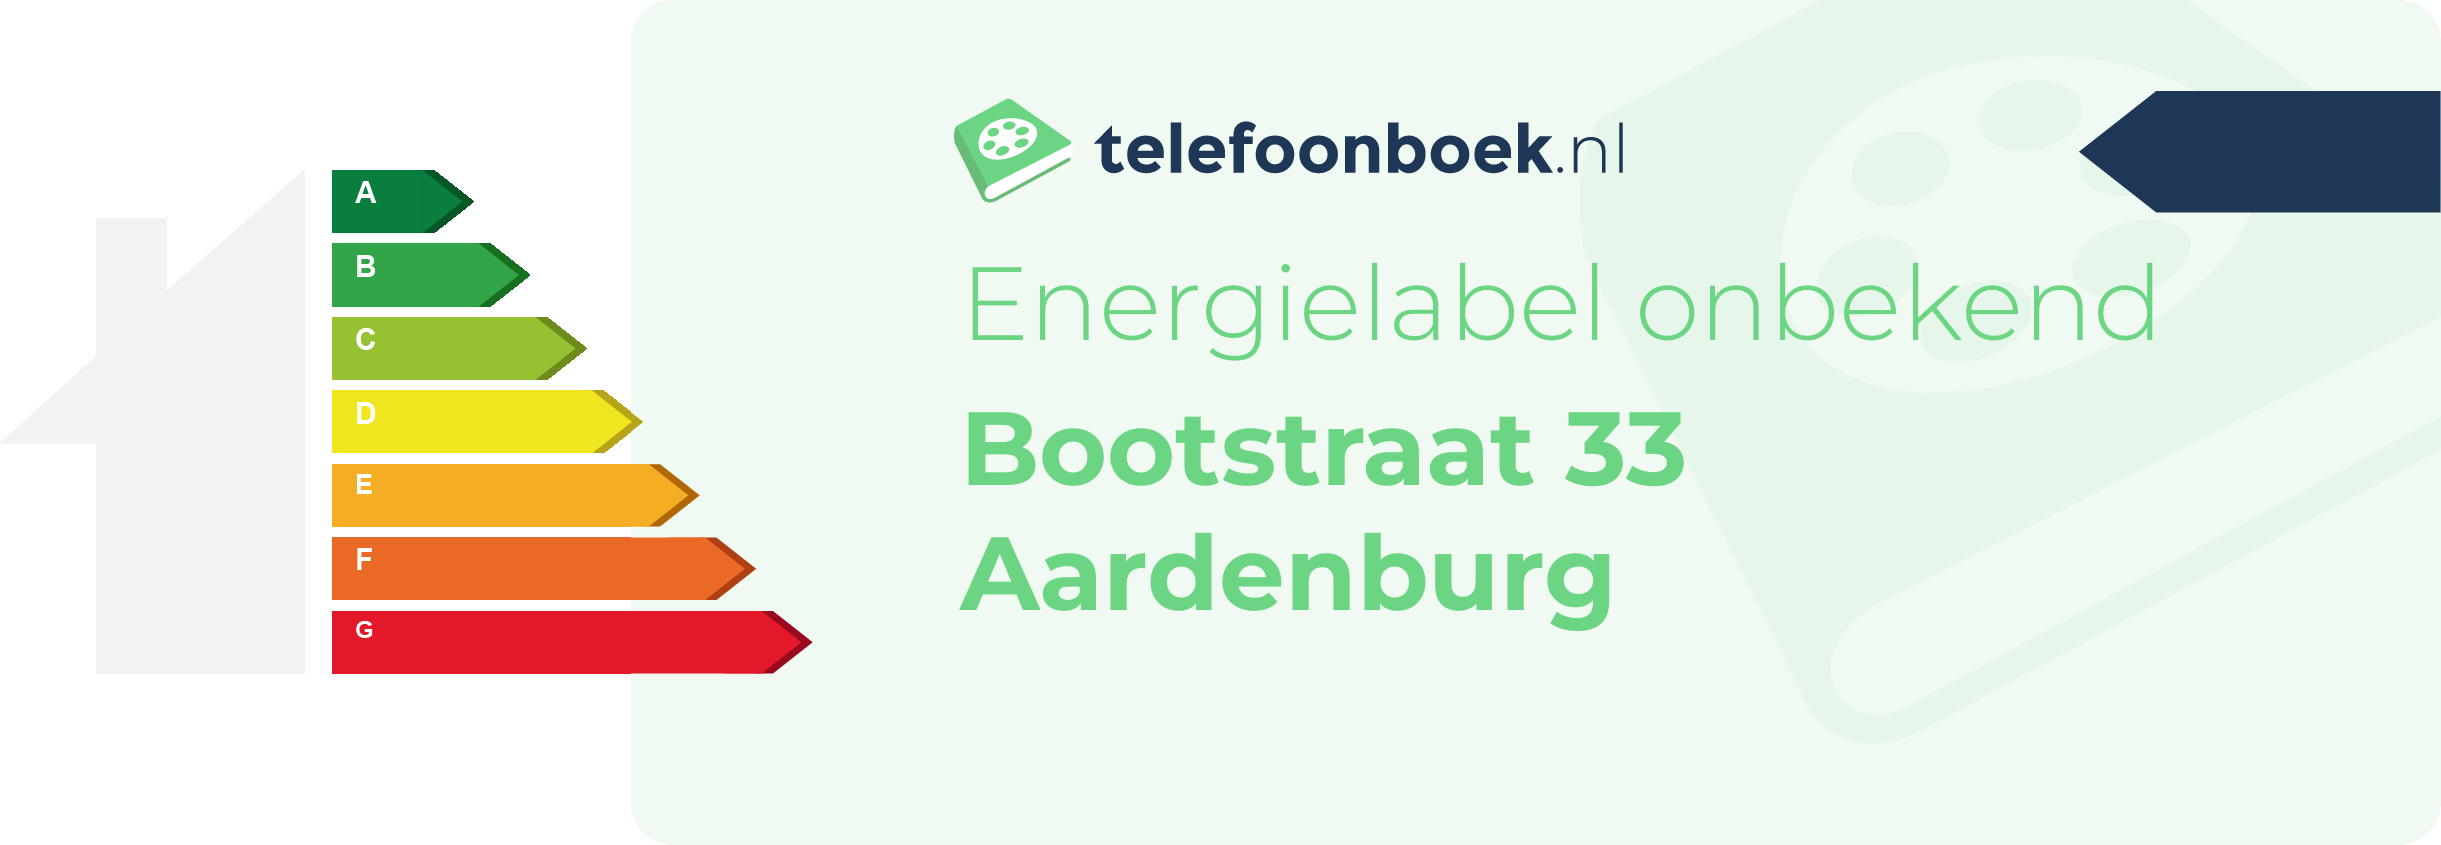 Energielabel Bootstraat 33 Aardenburg